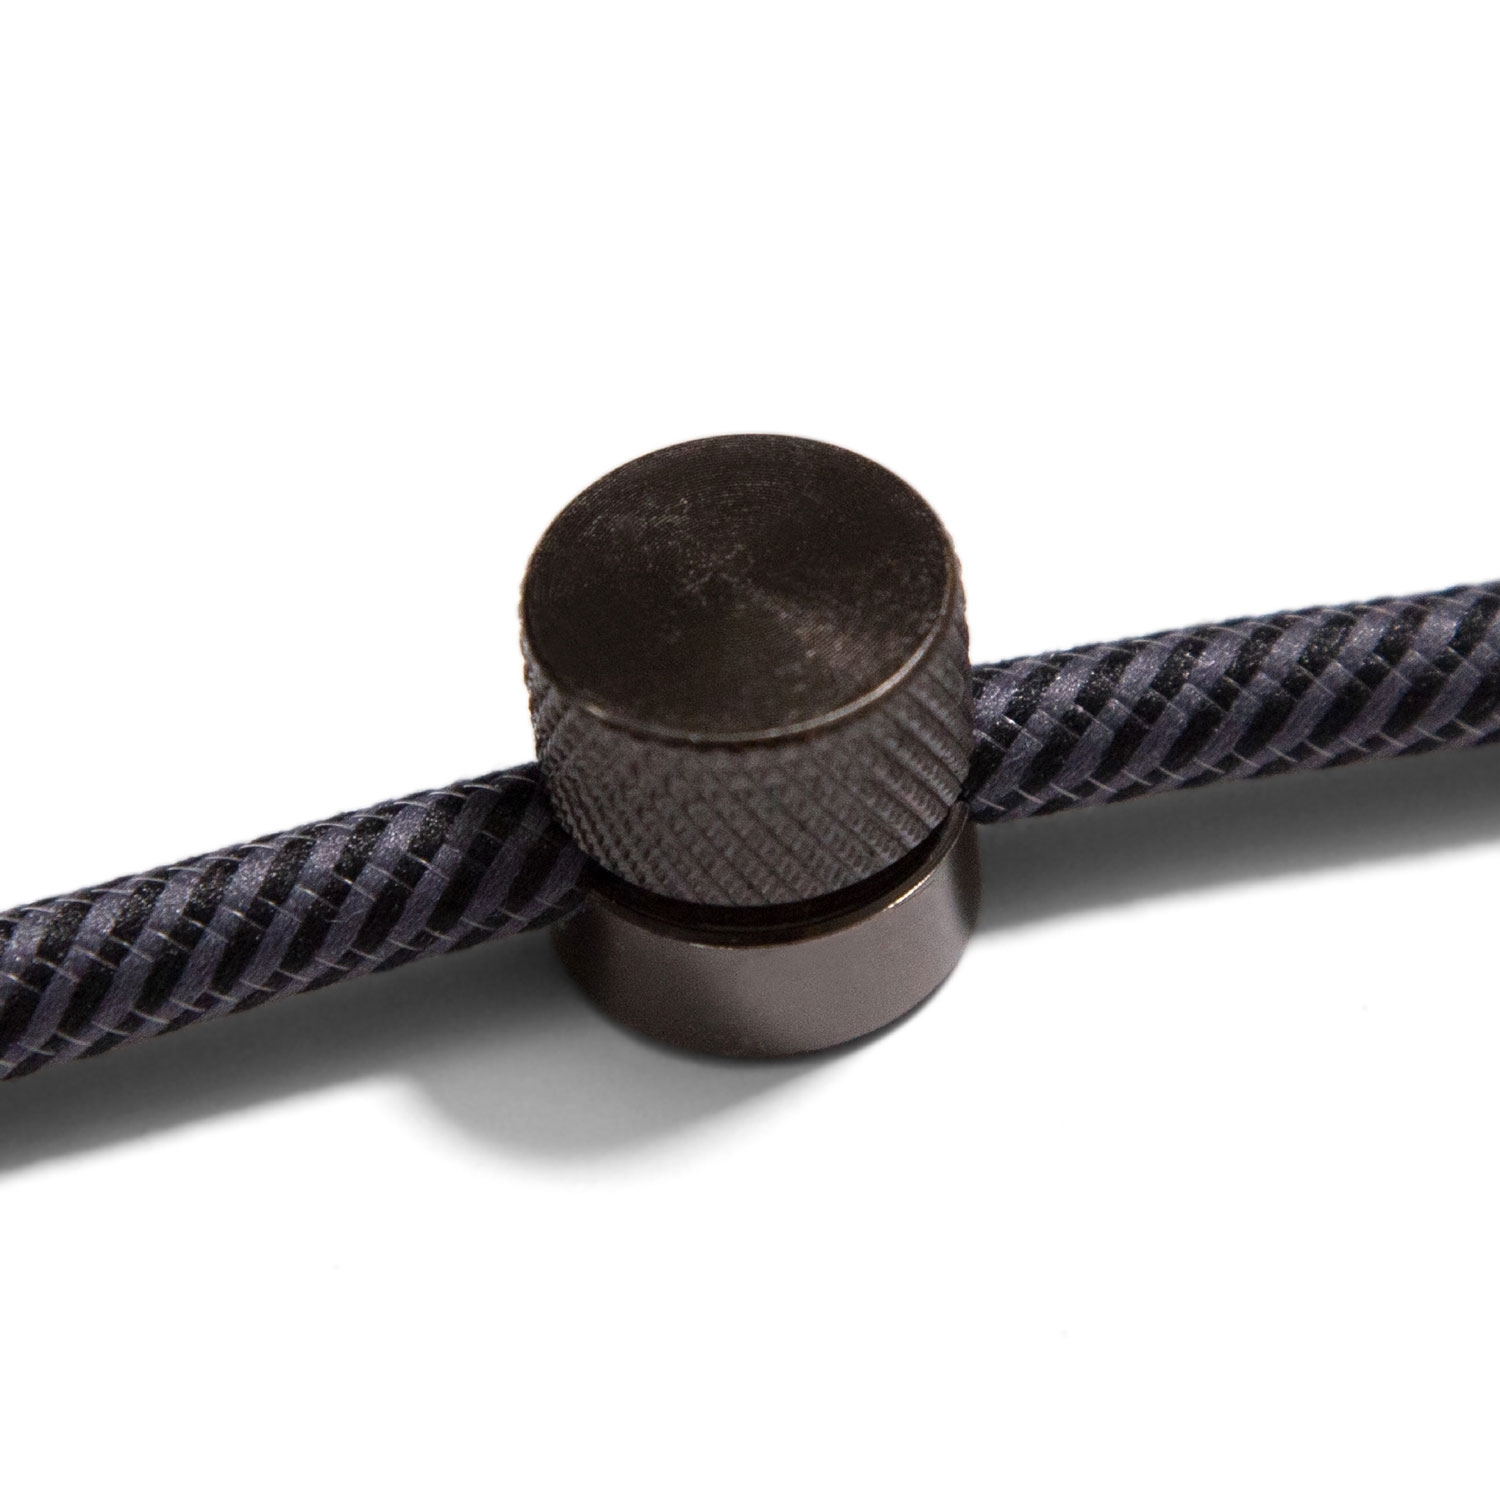 Metal Cable Tie Tool - Zip Tie Tightener - Solutions de Fixation de Câbles